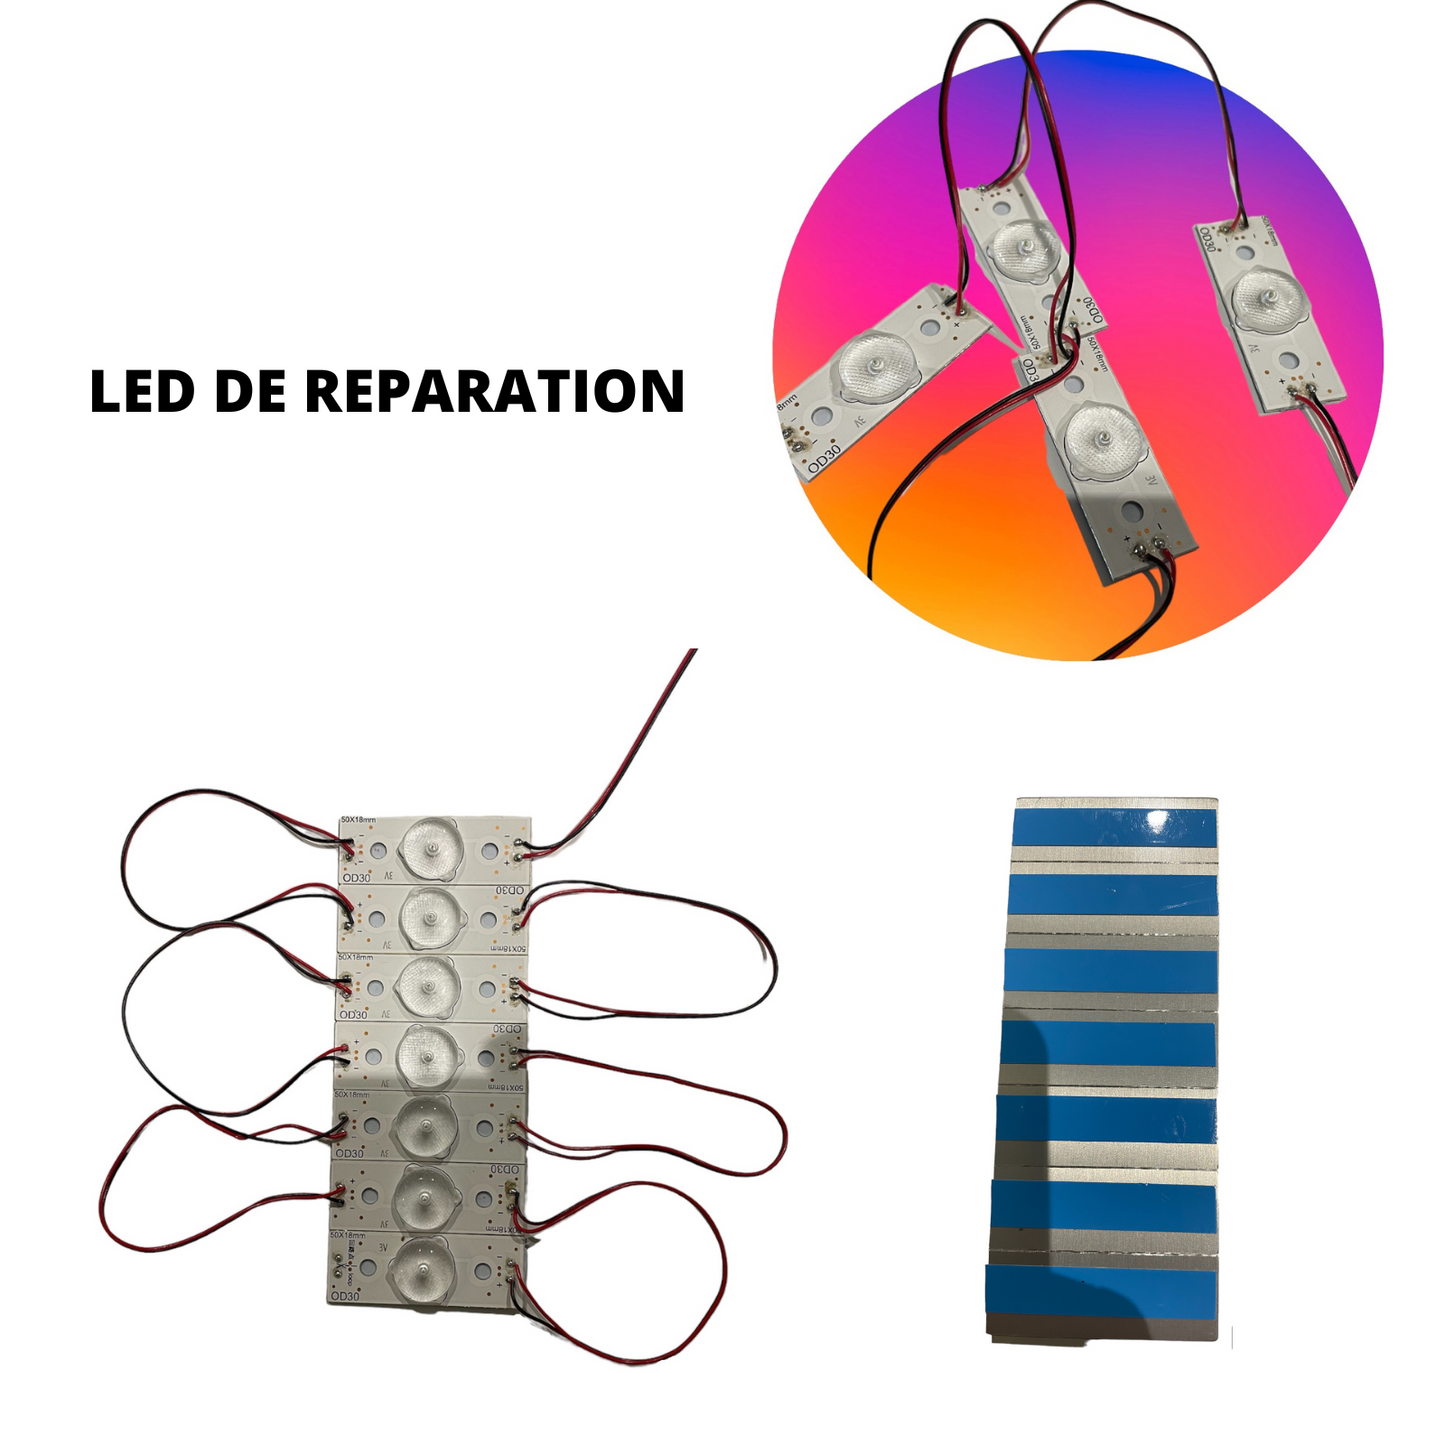 LED DE REPARATION TV 